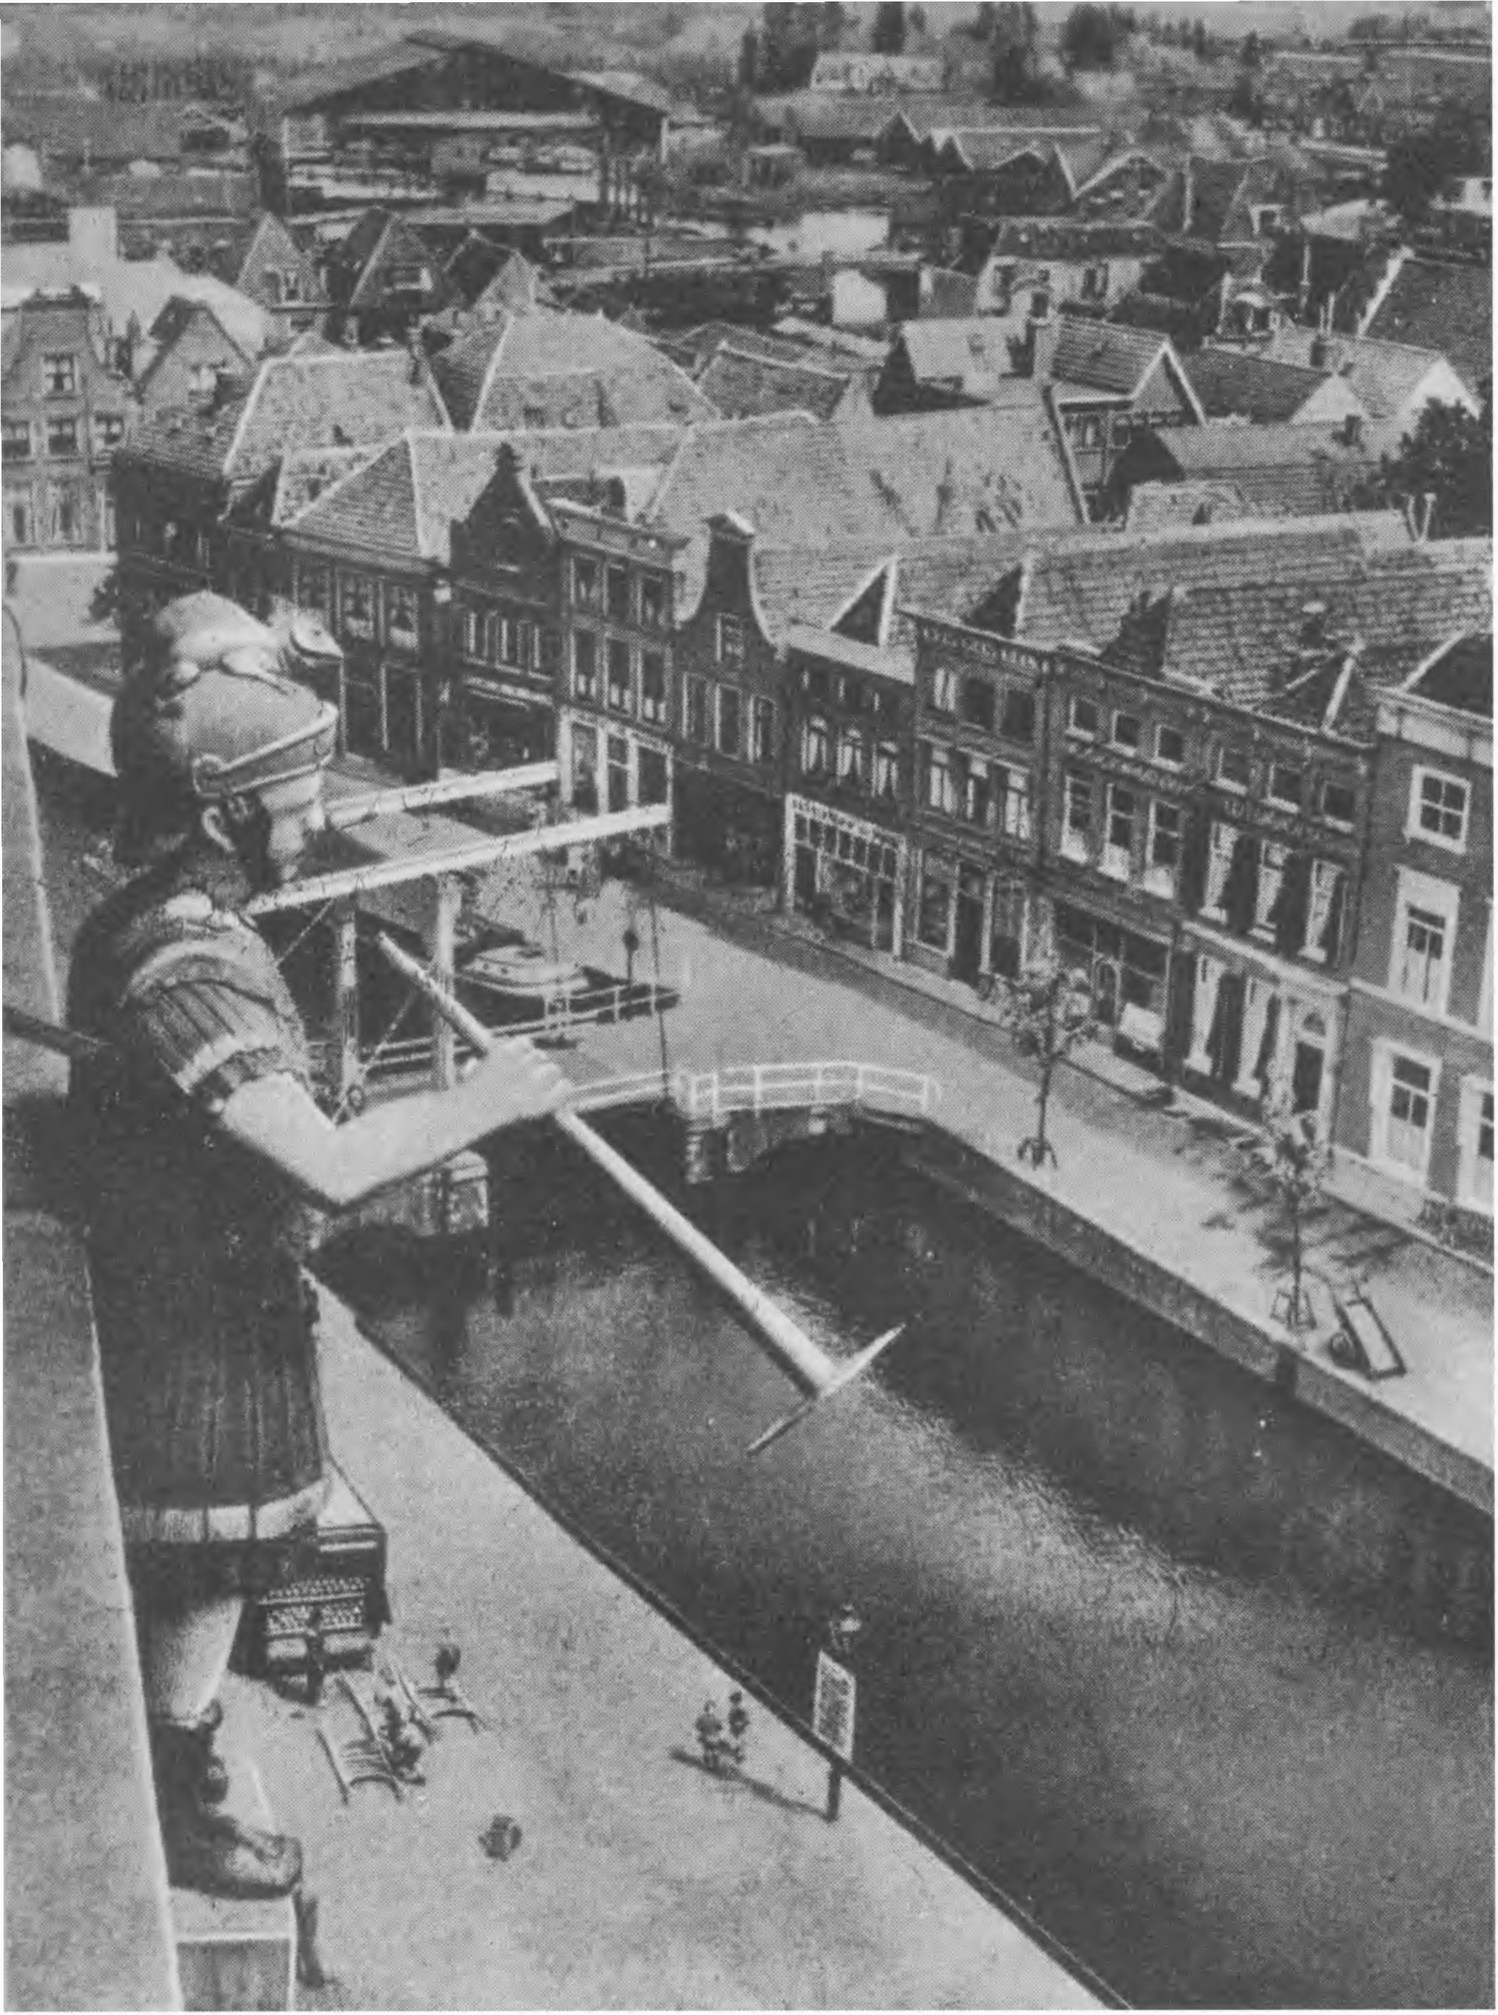 Тесно прижавшиеся друг к другу узкие каменные дома, каналы, мосты — таков Алкмар, типичный древний город Голландии